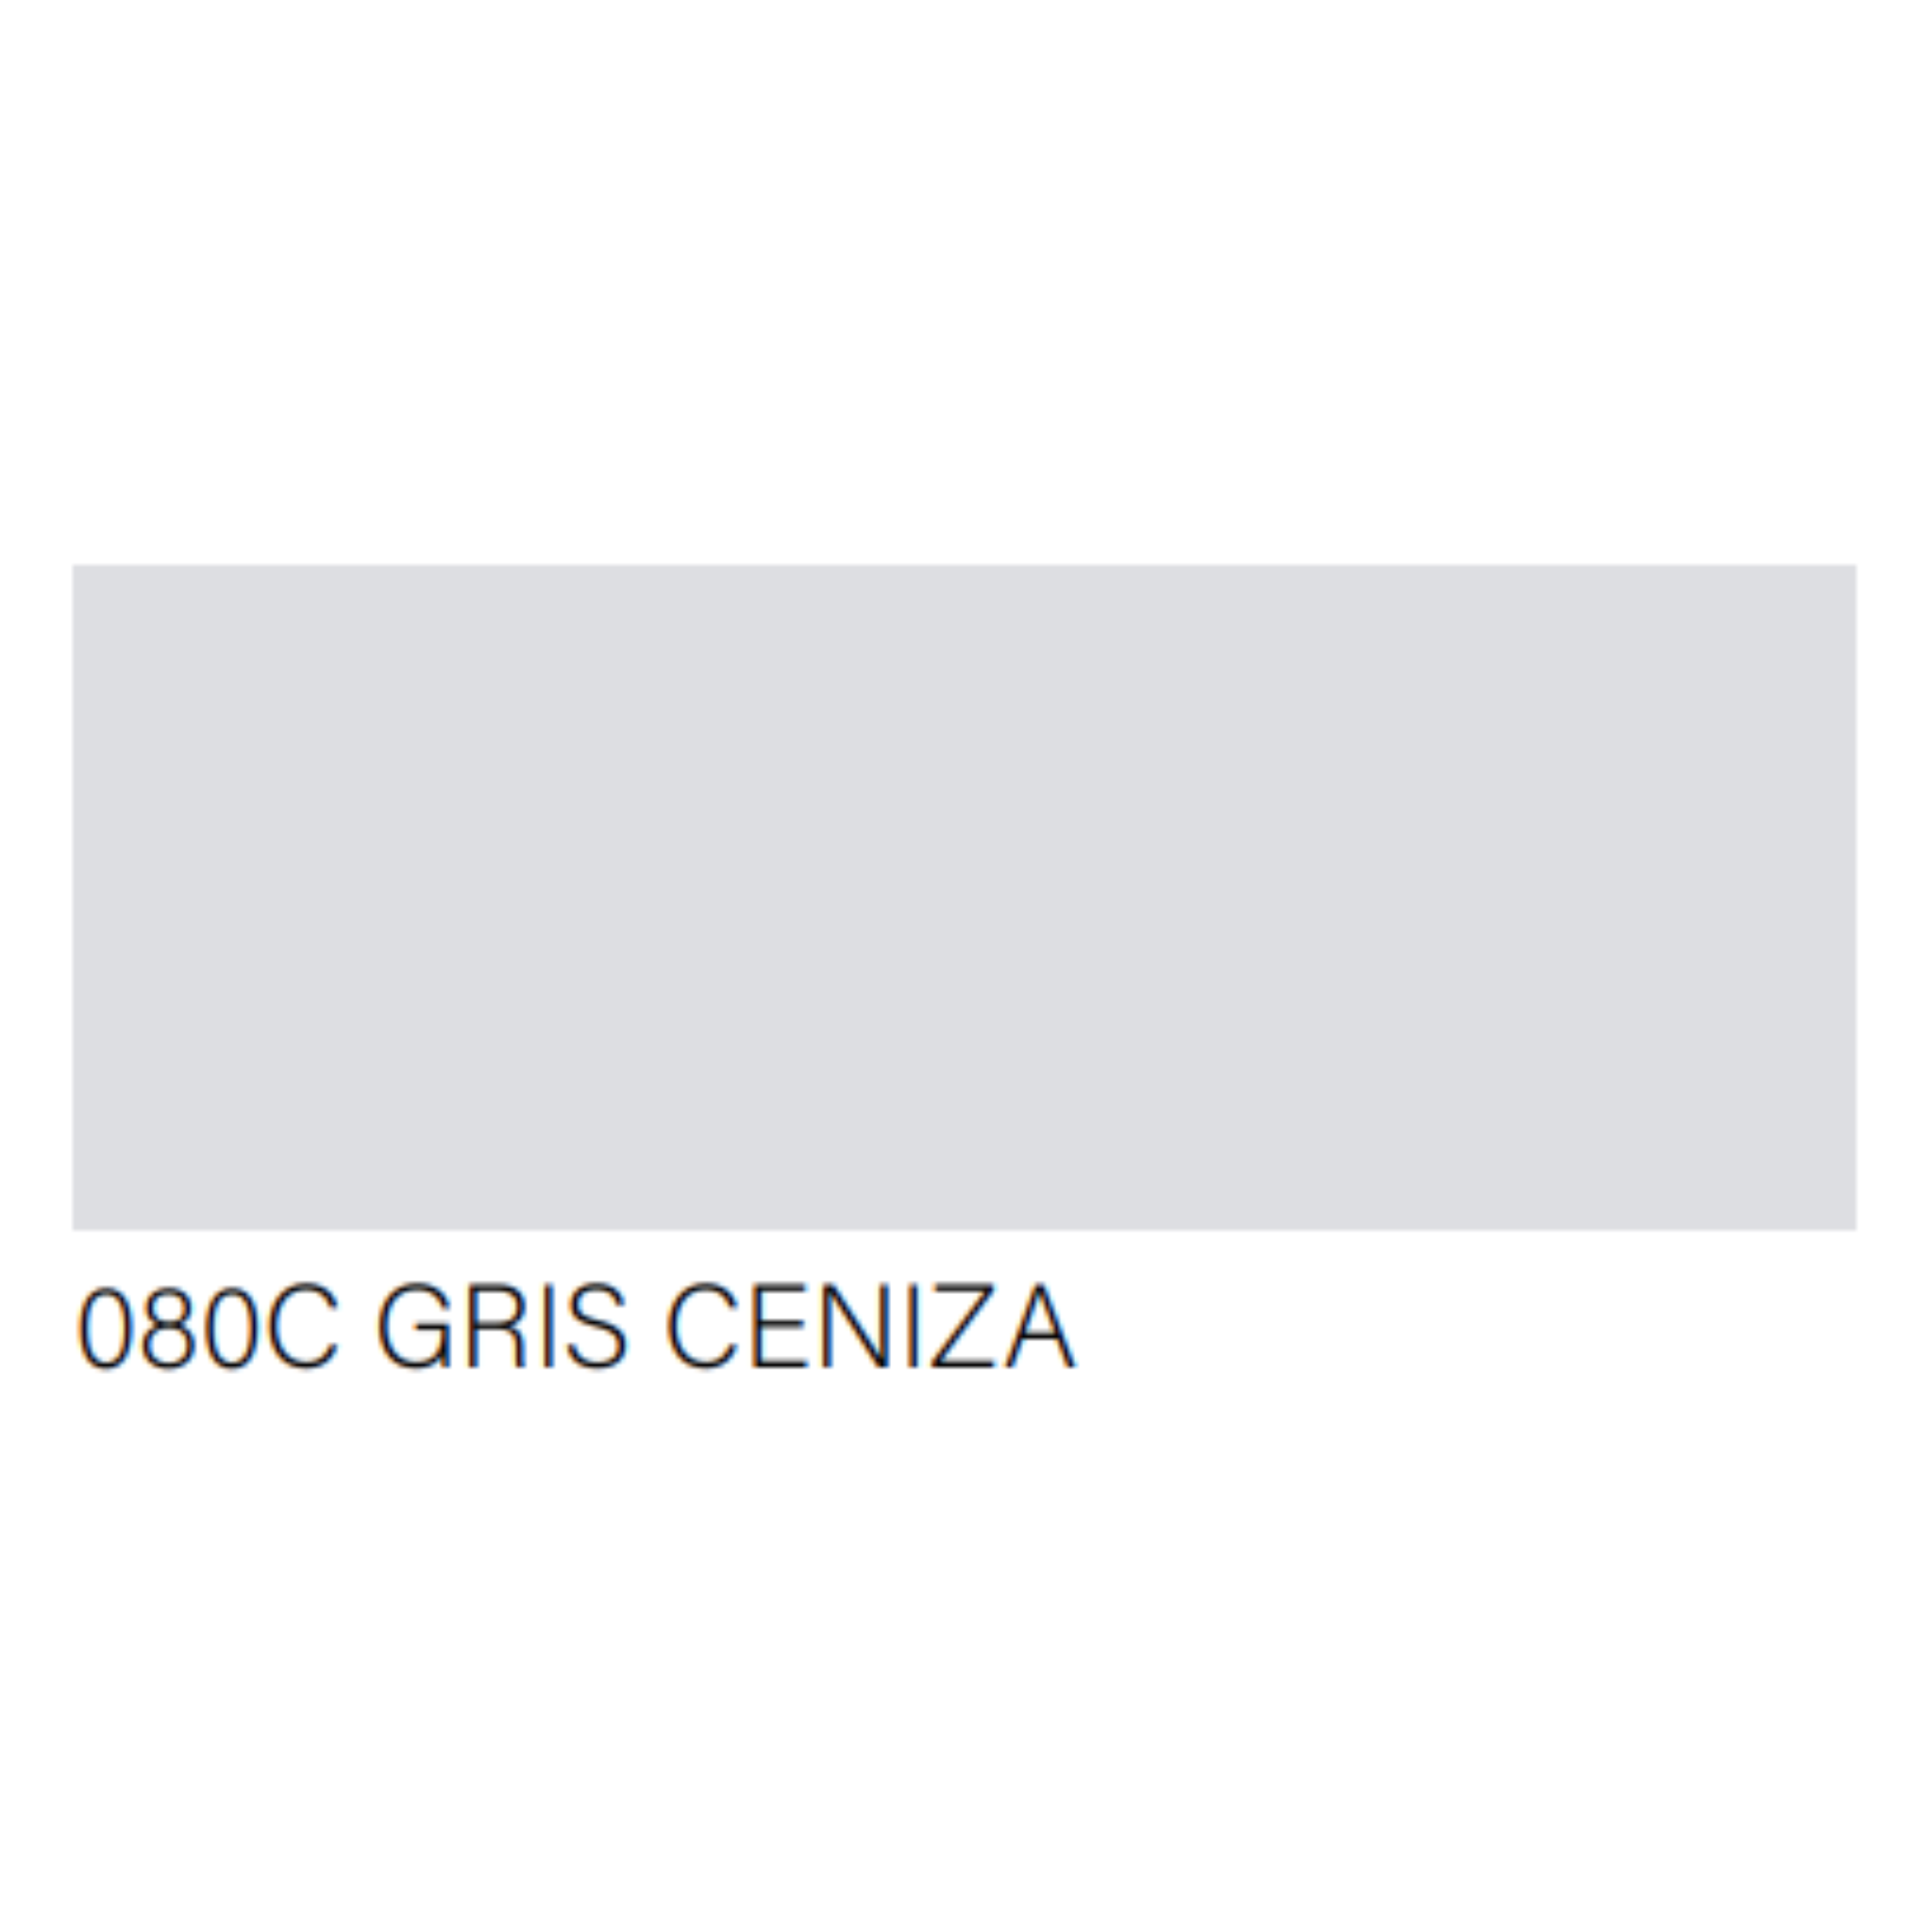 PINTURA EN SPRAY COLOR GRIS CLARO (GRIS CENIZA)- ABRO 80-C - 4G GLOBAL  INVERSIONES